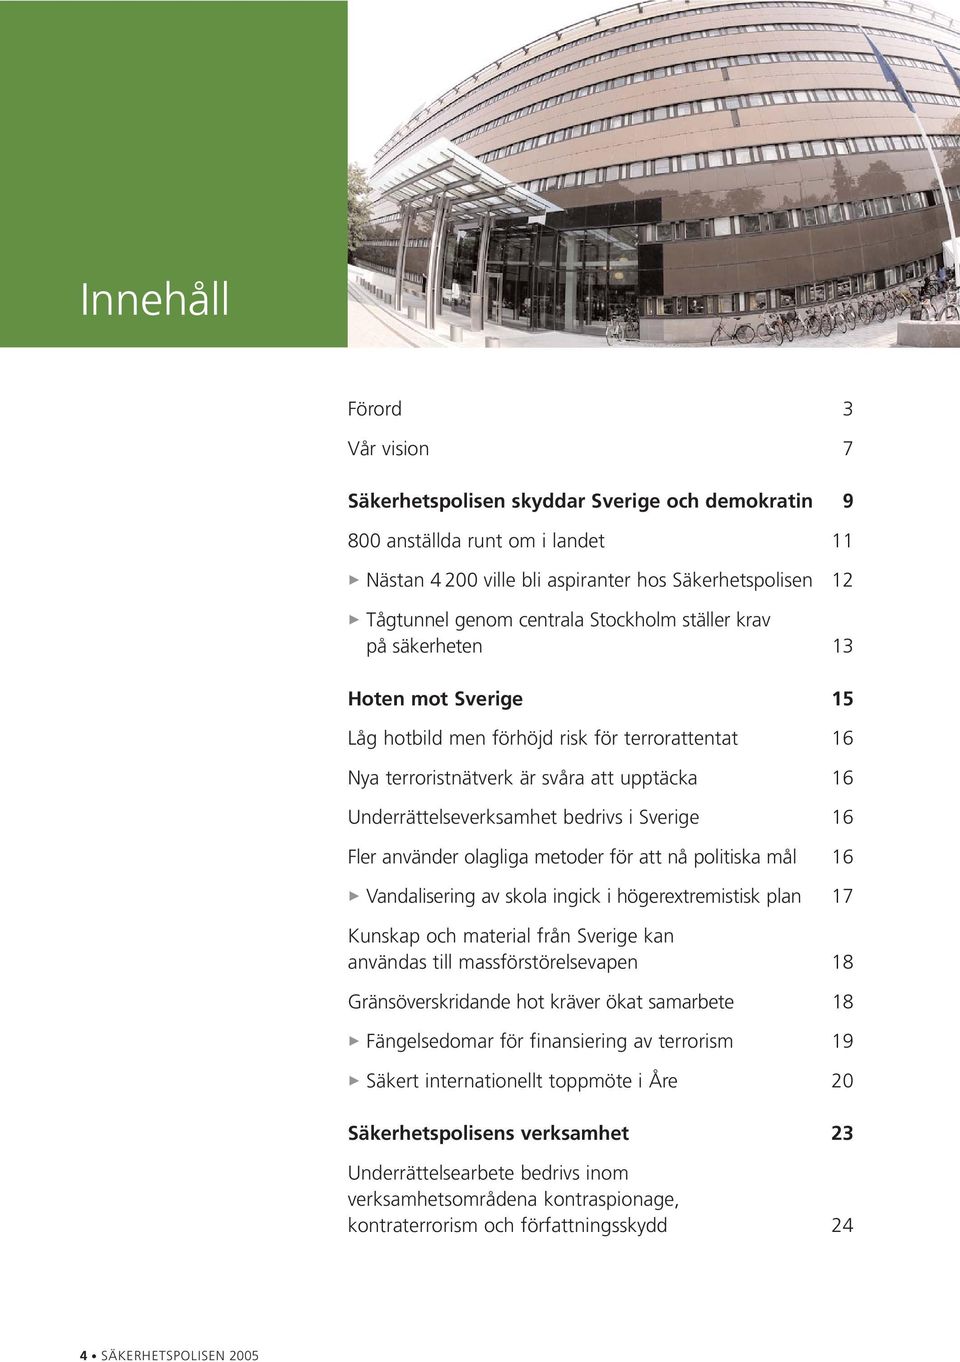 i Sverige 16 Fler använder olagliga metoder för att nå politiska mål 16 > Vandalisering av skola ingick i högerextremistisk plan 17 Kunskap och material från Sverige kan användas till